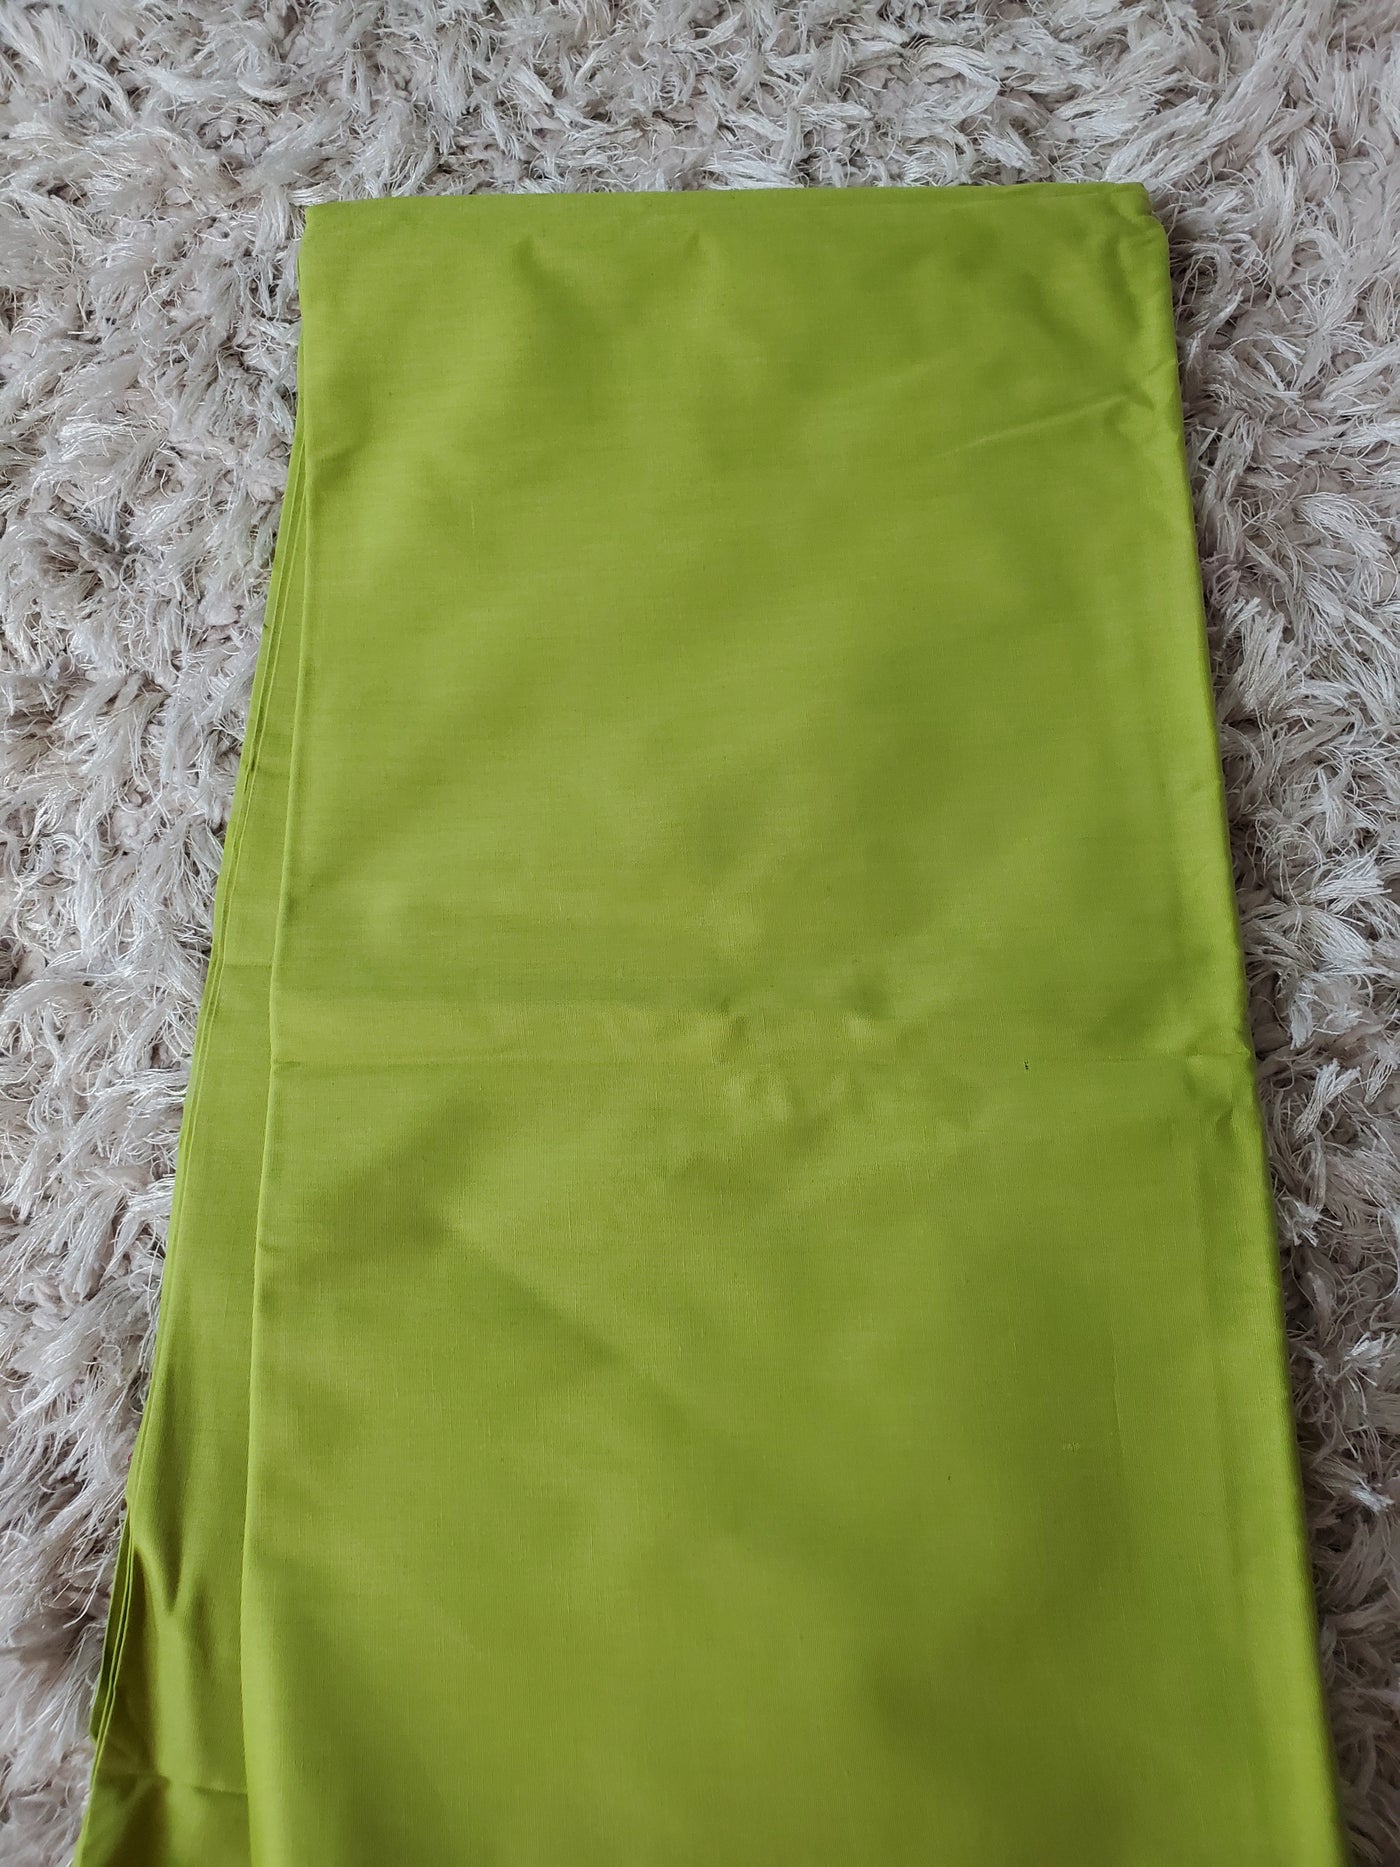 Plain Lemon Green African Ankara Fabric